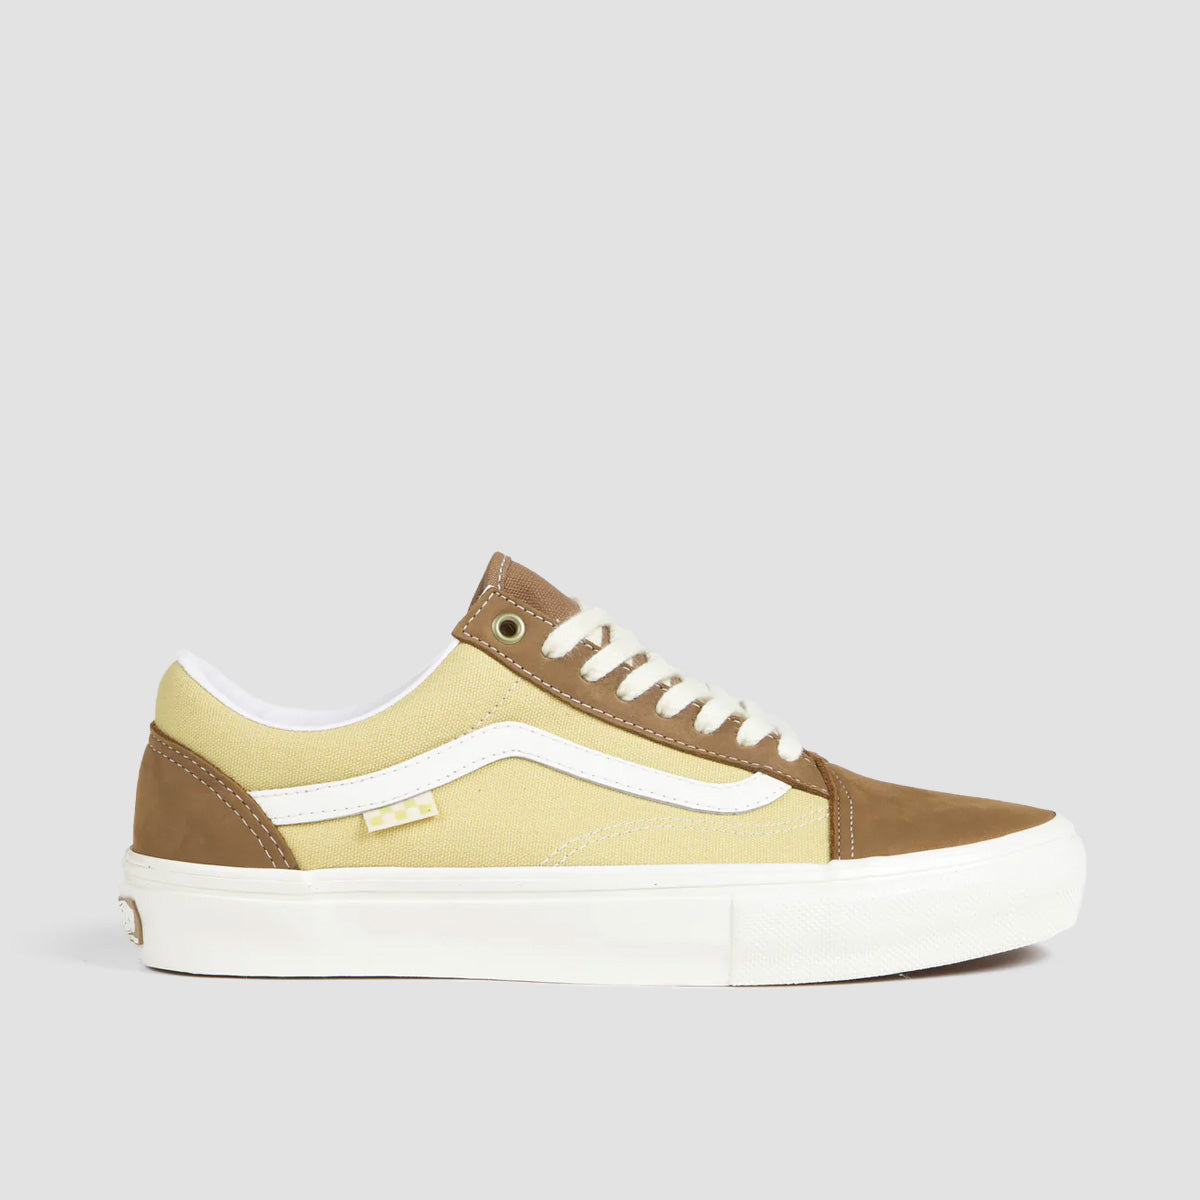 Vans Skate Old Skool Shoes - Nubuck/Canvas Brown